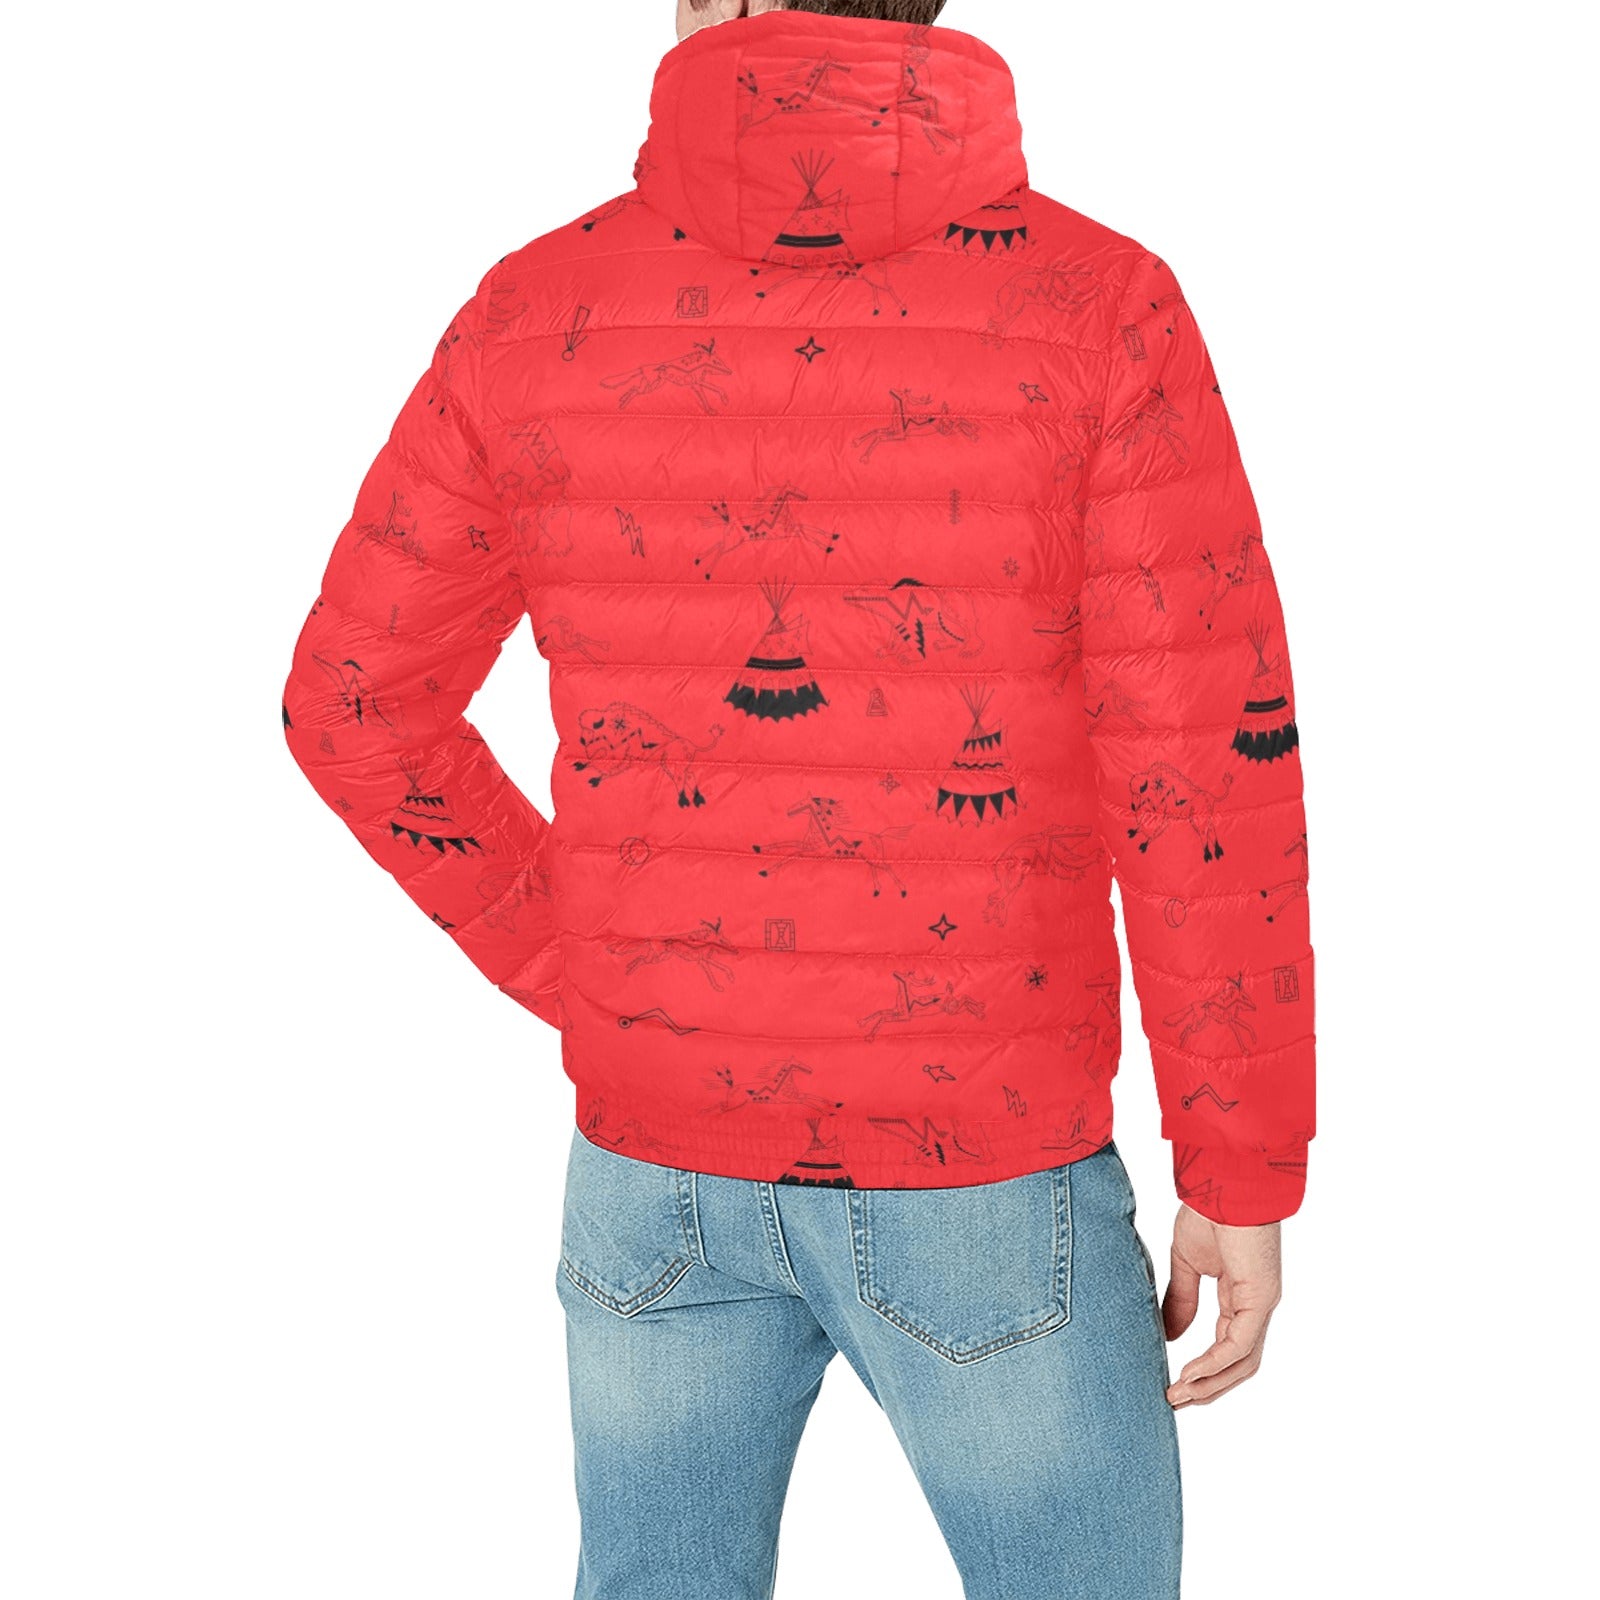 Ledger Dabbles Red Men's Padded Hooded Jacket